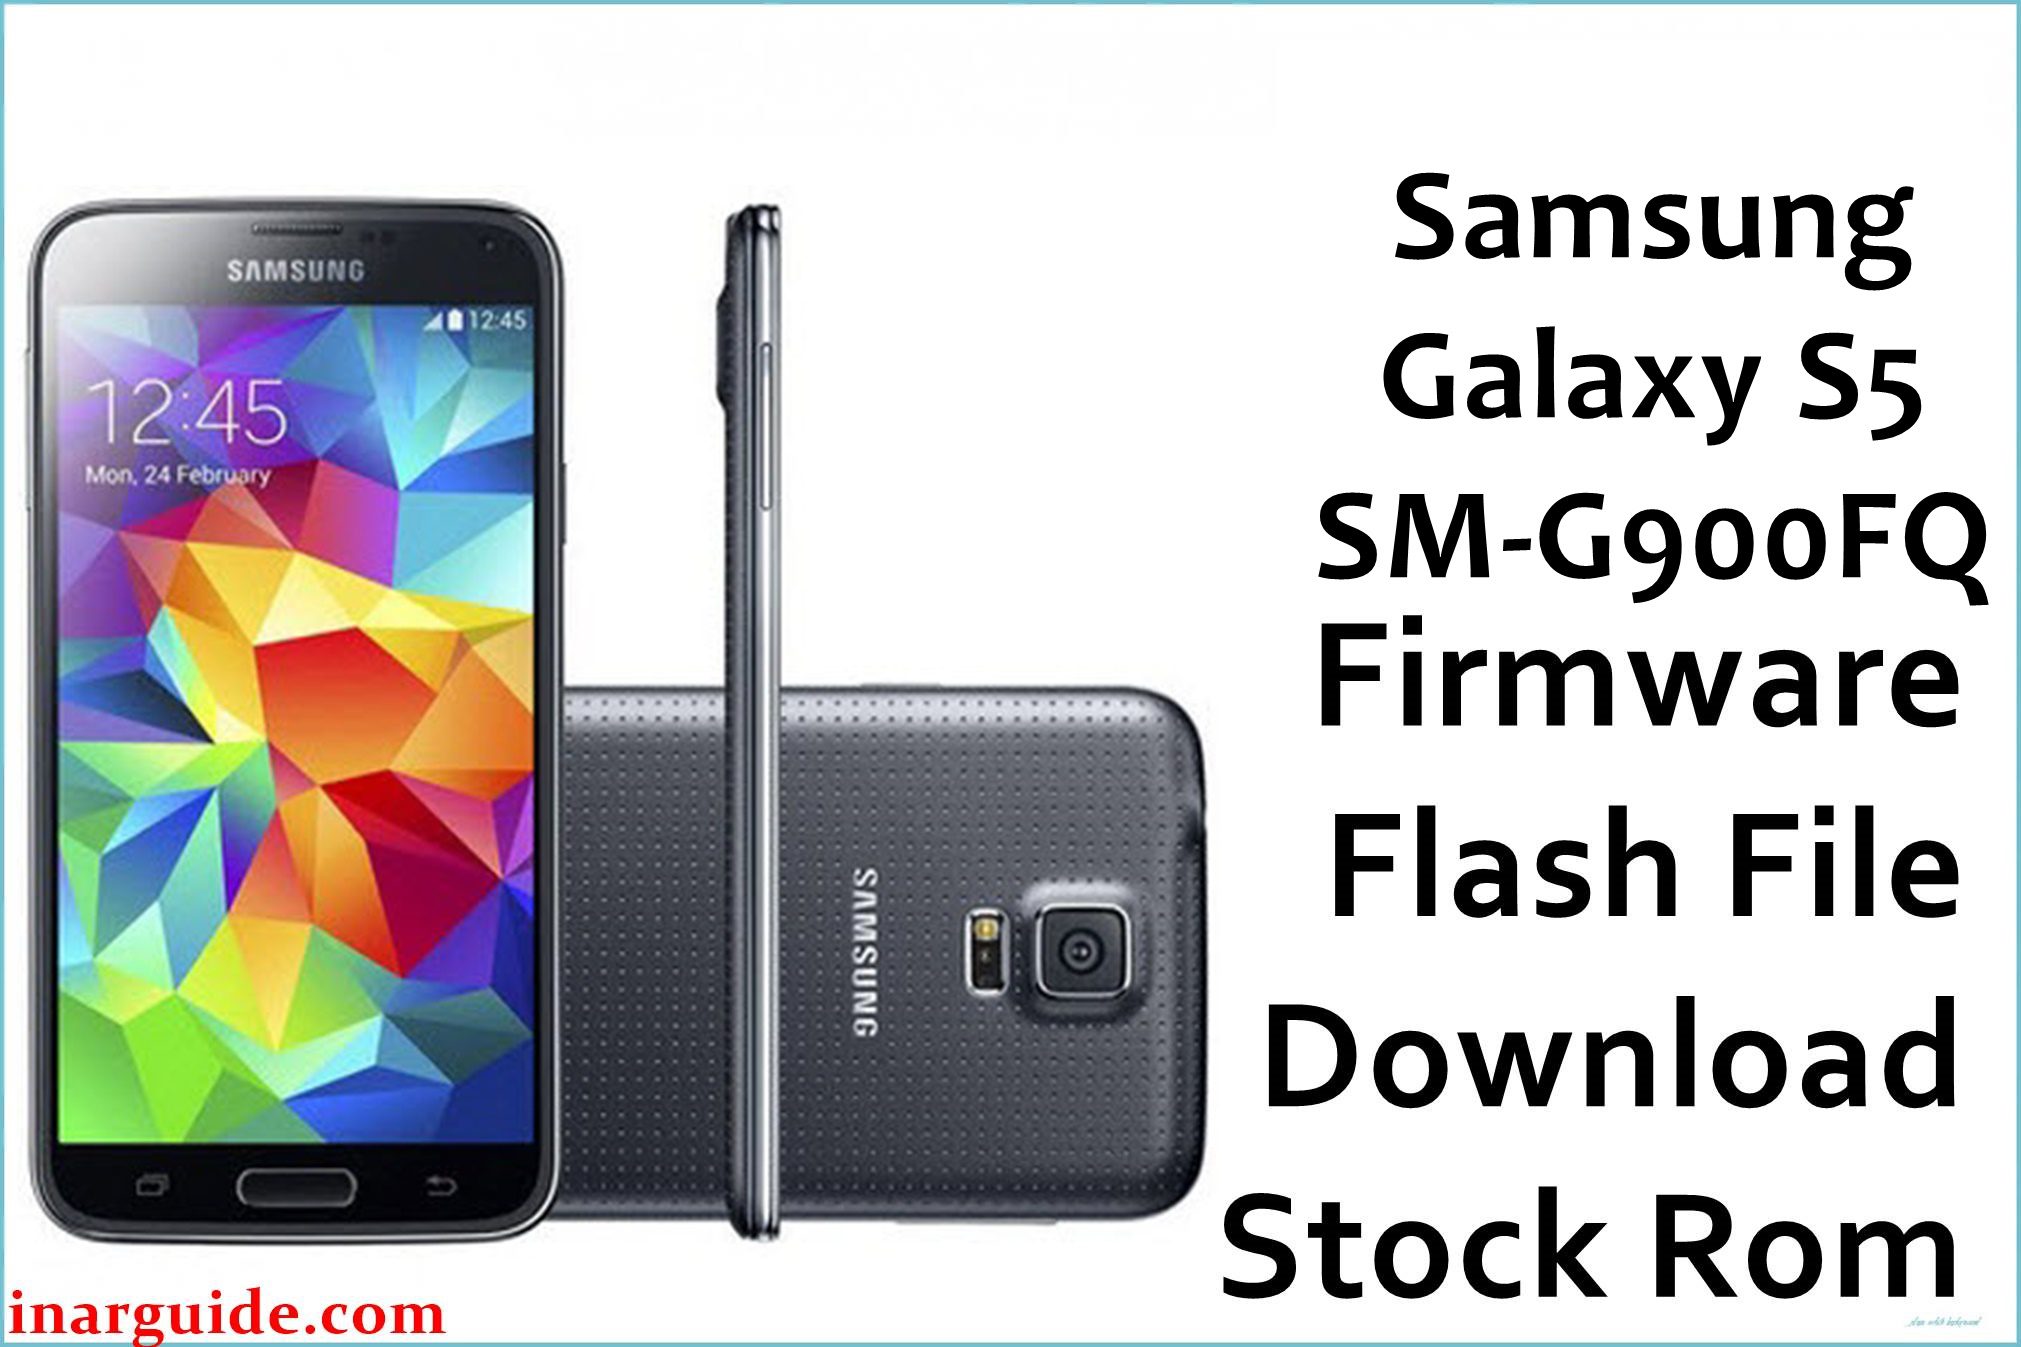 Samsung Galaxy S5 SM G900FQ